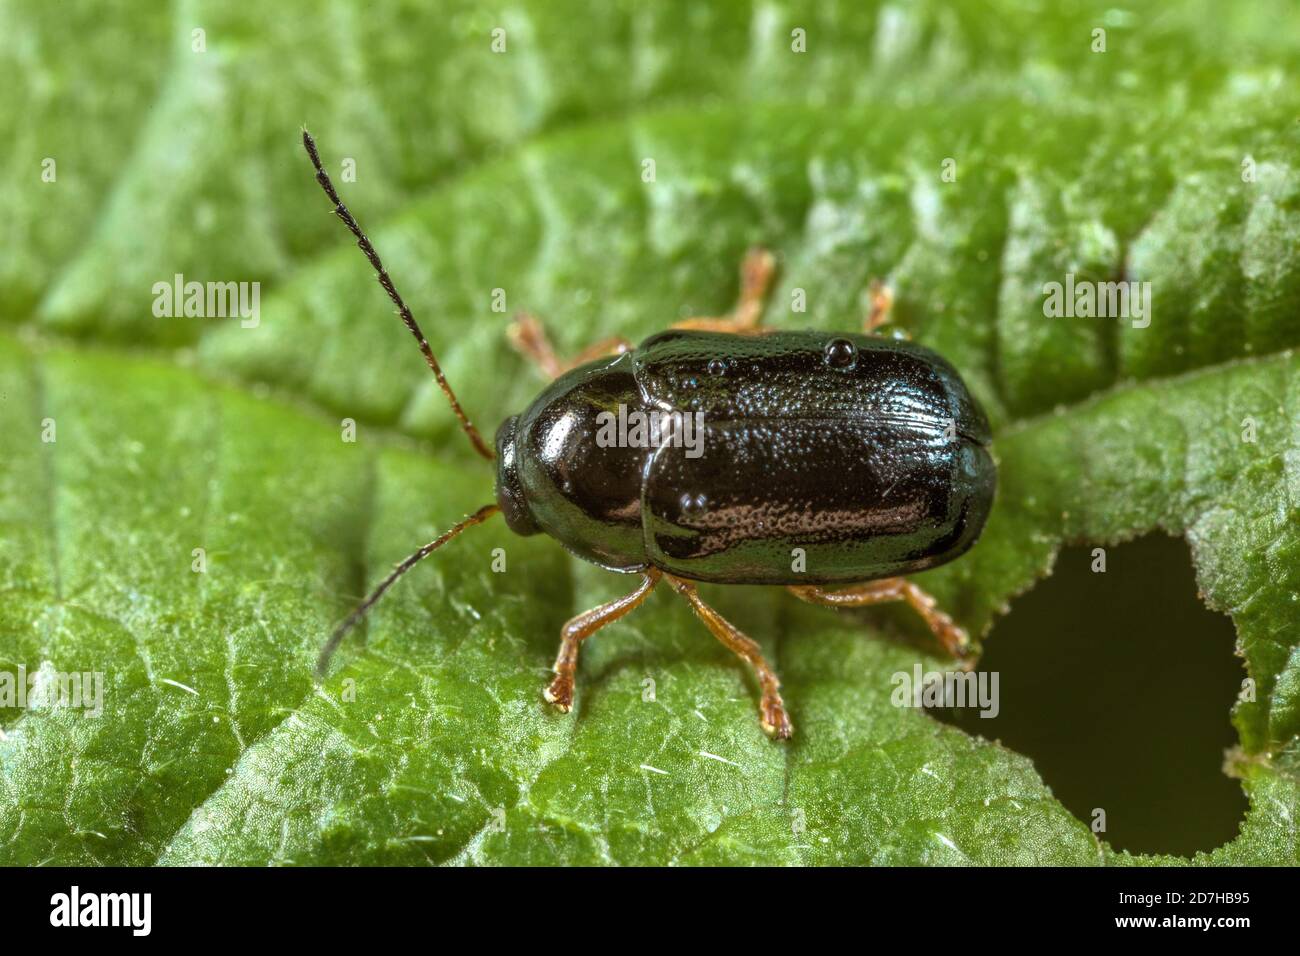 Leaf beetle (Cryptocephalus nitidus), sits on a leaf, Germany Stock Photo